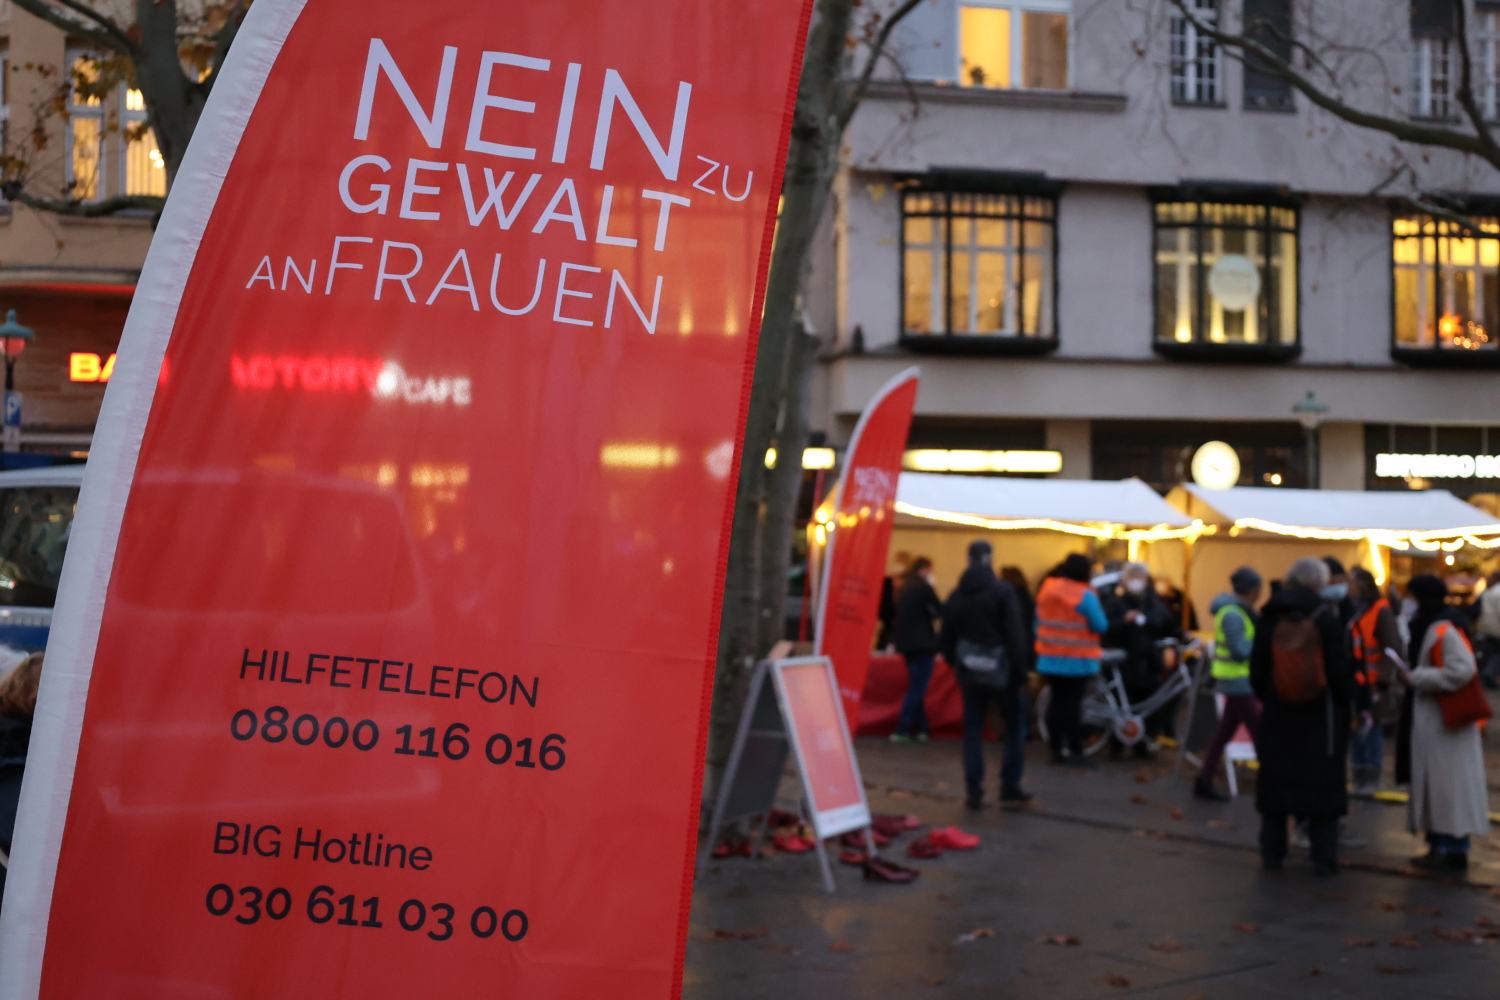 Aktion zum Internationalen Tag gegen Gewalt an Frauen 2021 auf dem Hermann-Ehlers-Platz in Steglitz mit Angabe der Nummer des Hilfetelefons: 08000 116 016 und der BIG Hotline: 030 611 03 00